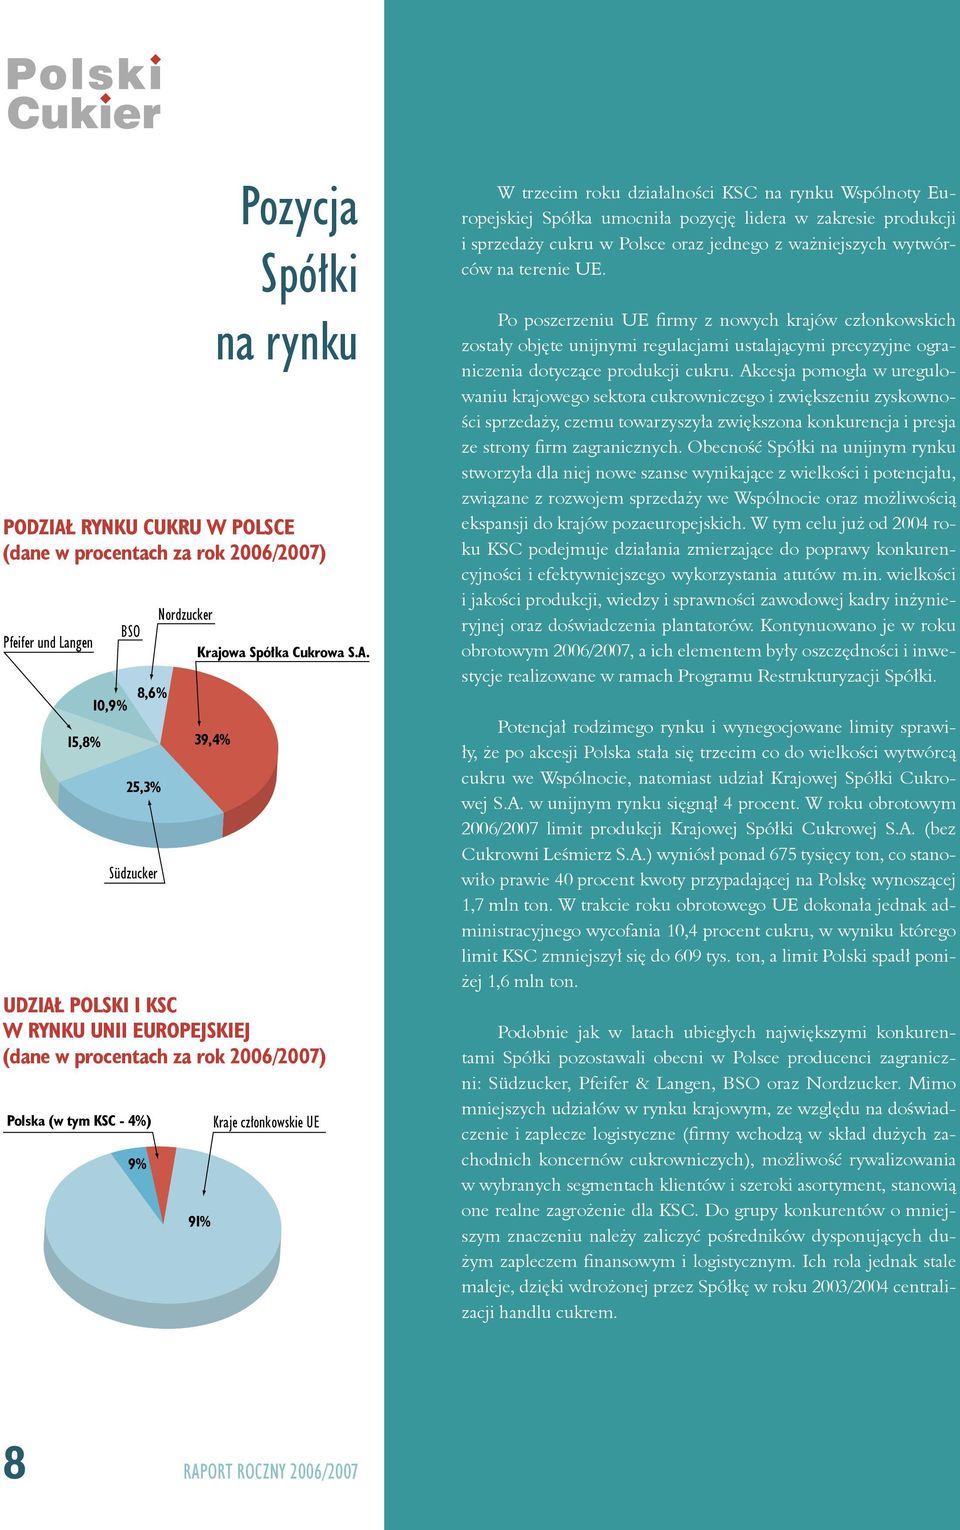 39,4% UDZIAŁ POLSKI I KSC W RYNKU UNII EUROPEJSKIEJ (dane w procentach za rok 2006/2007) Polska (w tym KSC - 4%) 9% 91% Kraje członkowskie UE W trzecim roku działalności KSC na rynku Wspólnoty